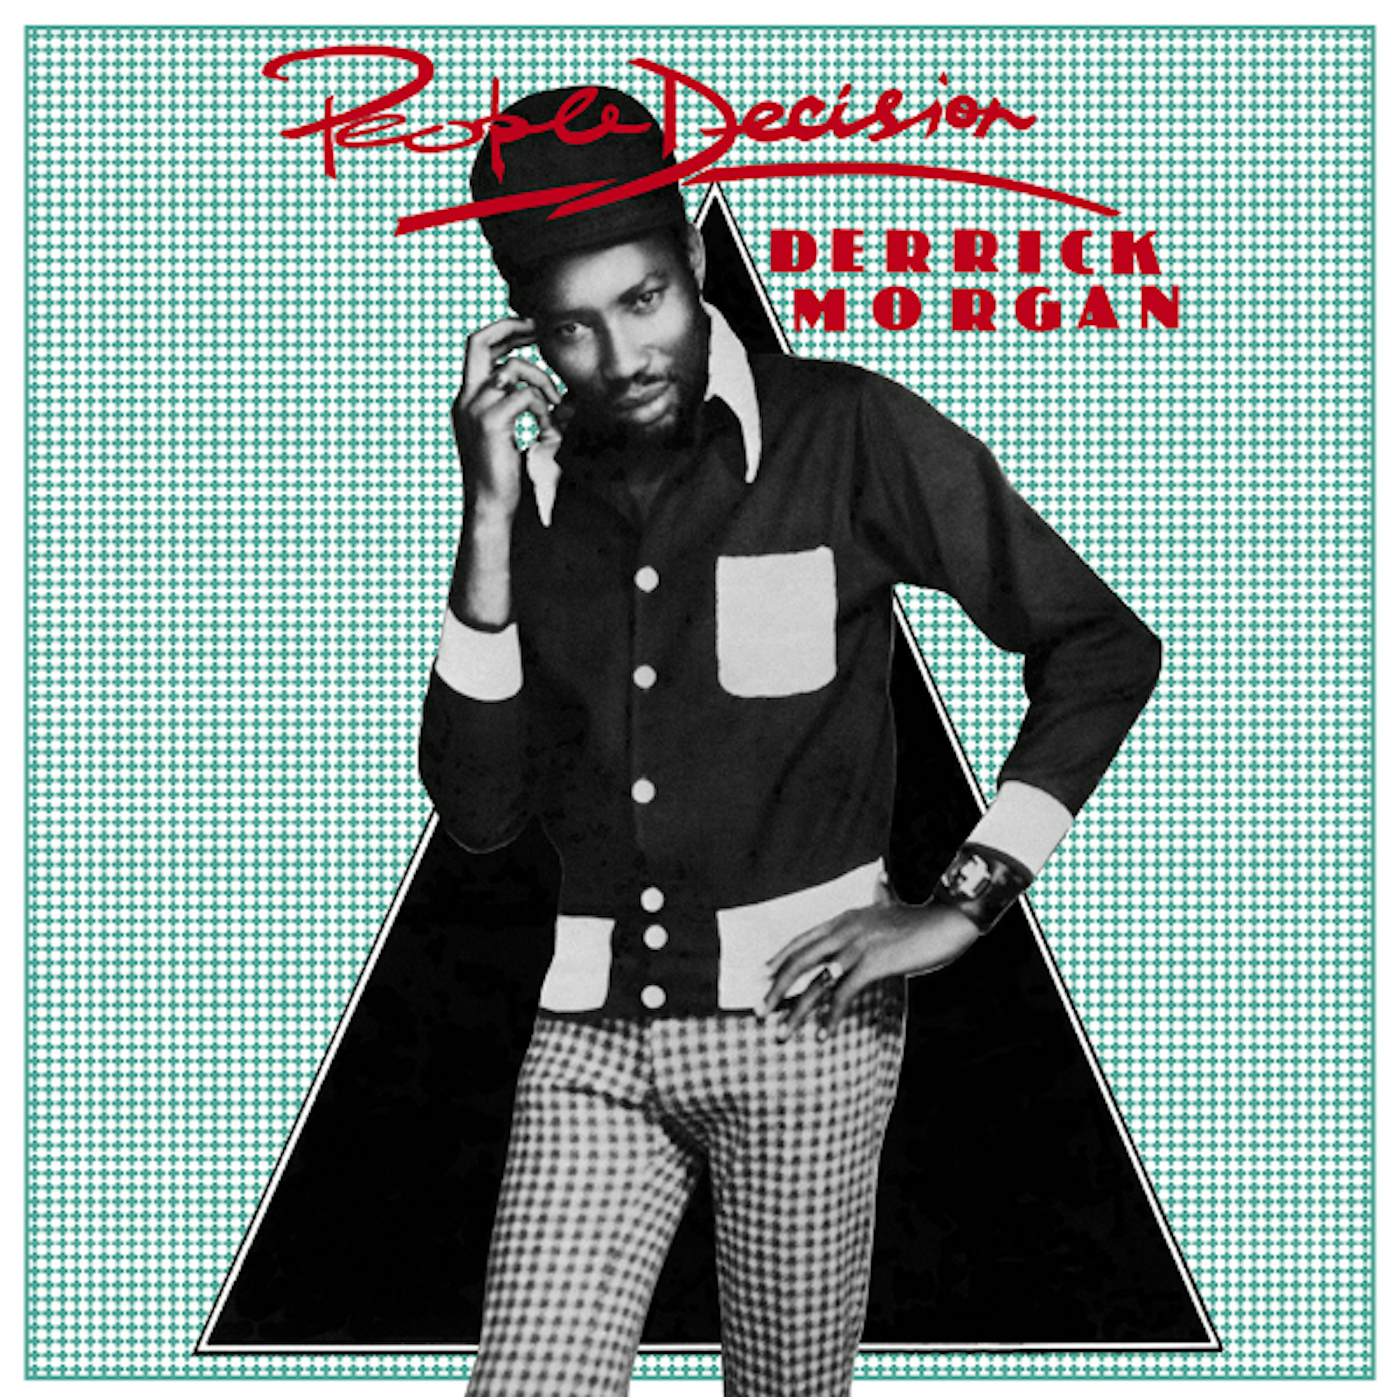 Derrick Morgan People Decision Vinyl Record